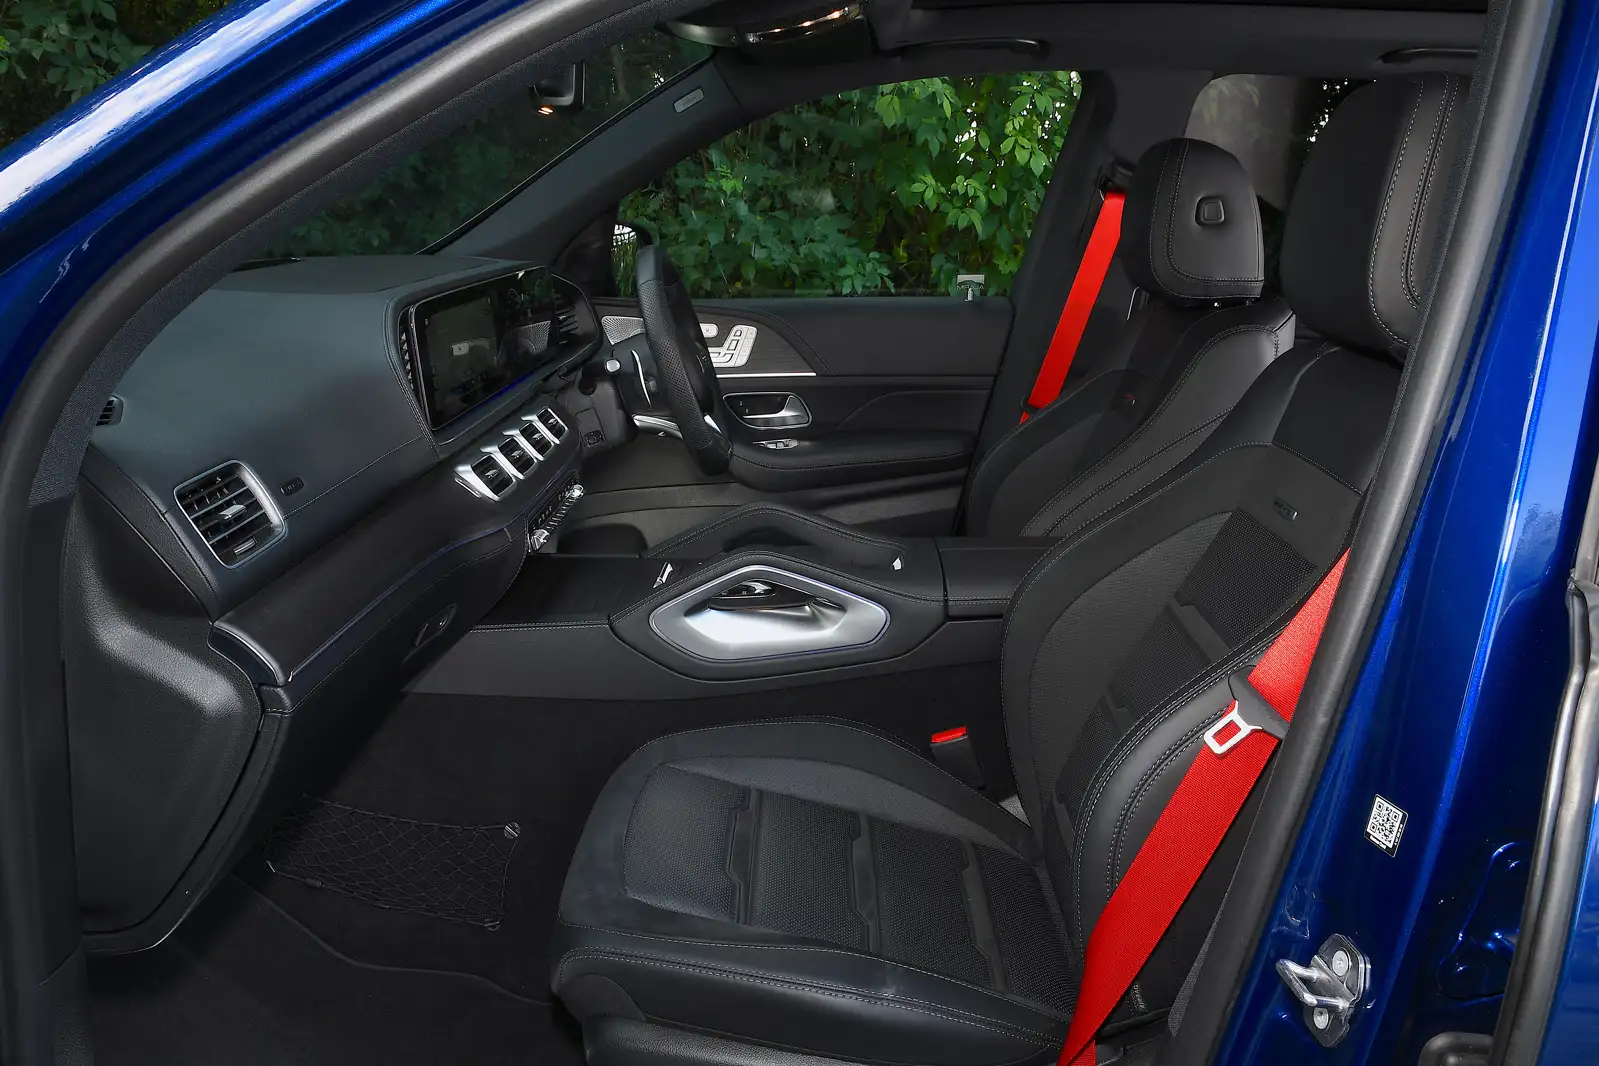 Mercedes-Benz GLE 450 interior - Seats